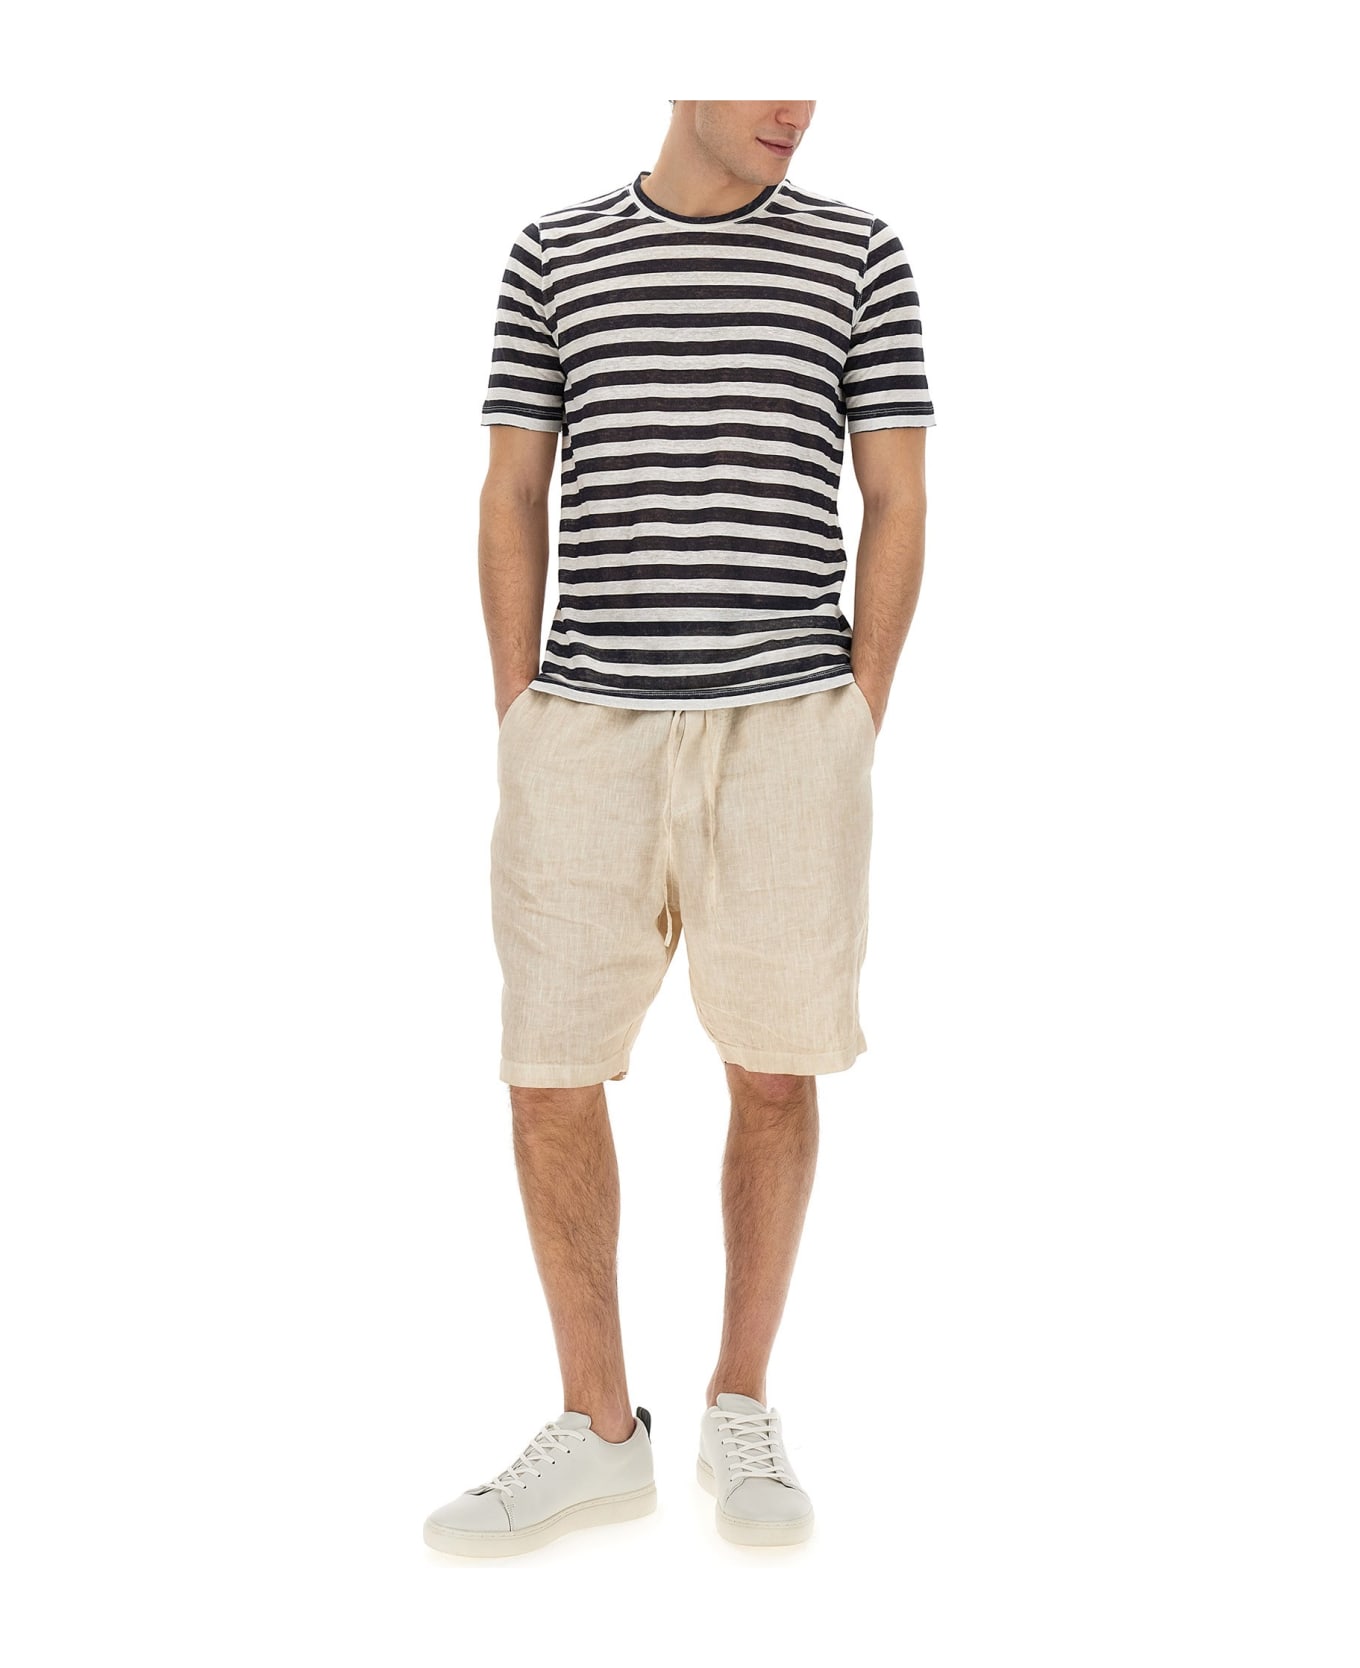 120% Lino Striped T-shirt シャツ